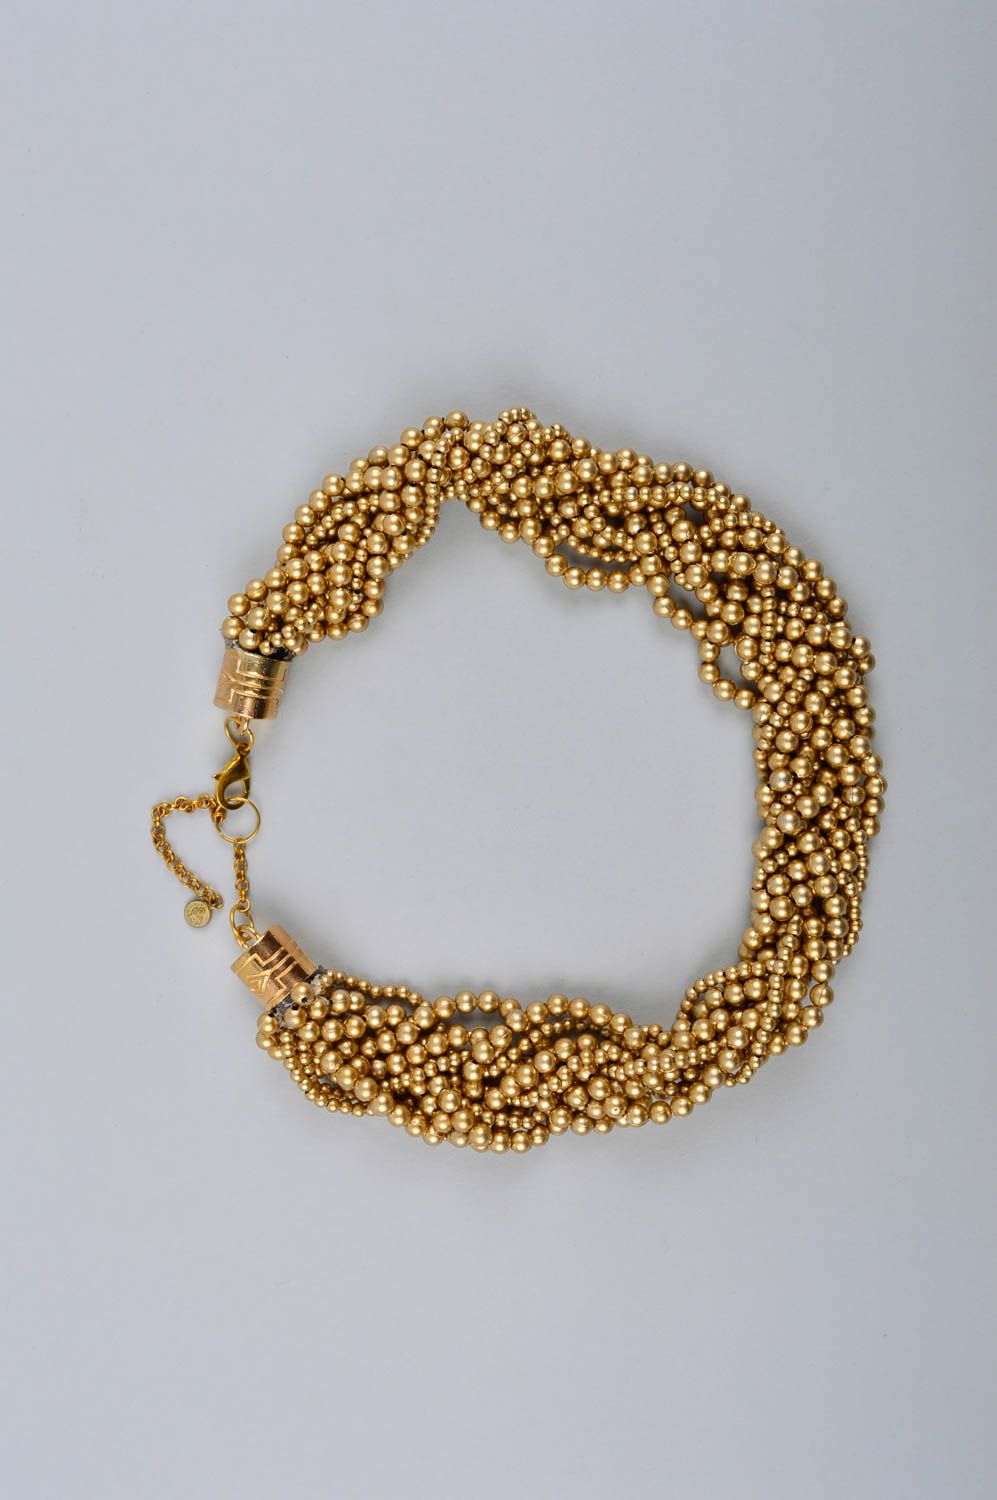 Handmade elegant beaded necklace stylish elegant accessory cute evening necklace photo 2